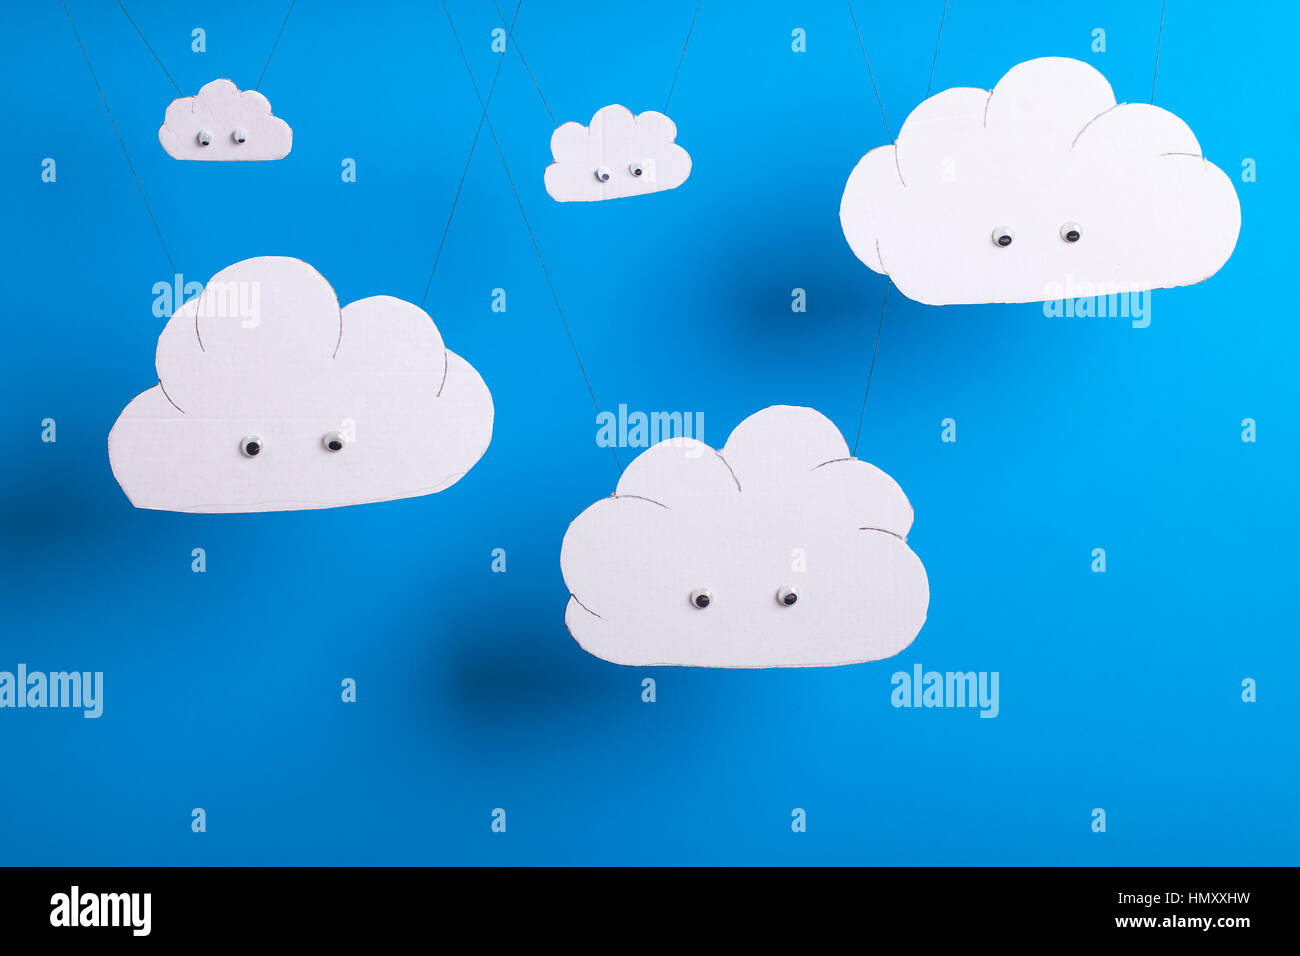 Cloud computing concept avec découpe en carton blanc nuages mignon avec les yeux en face d'un fond bleu ciel. Banque D'Images